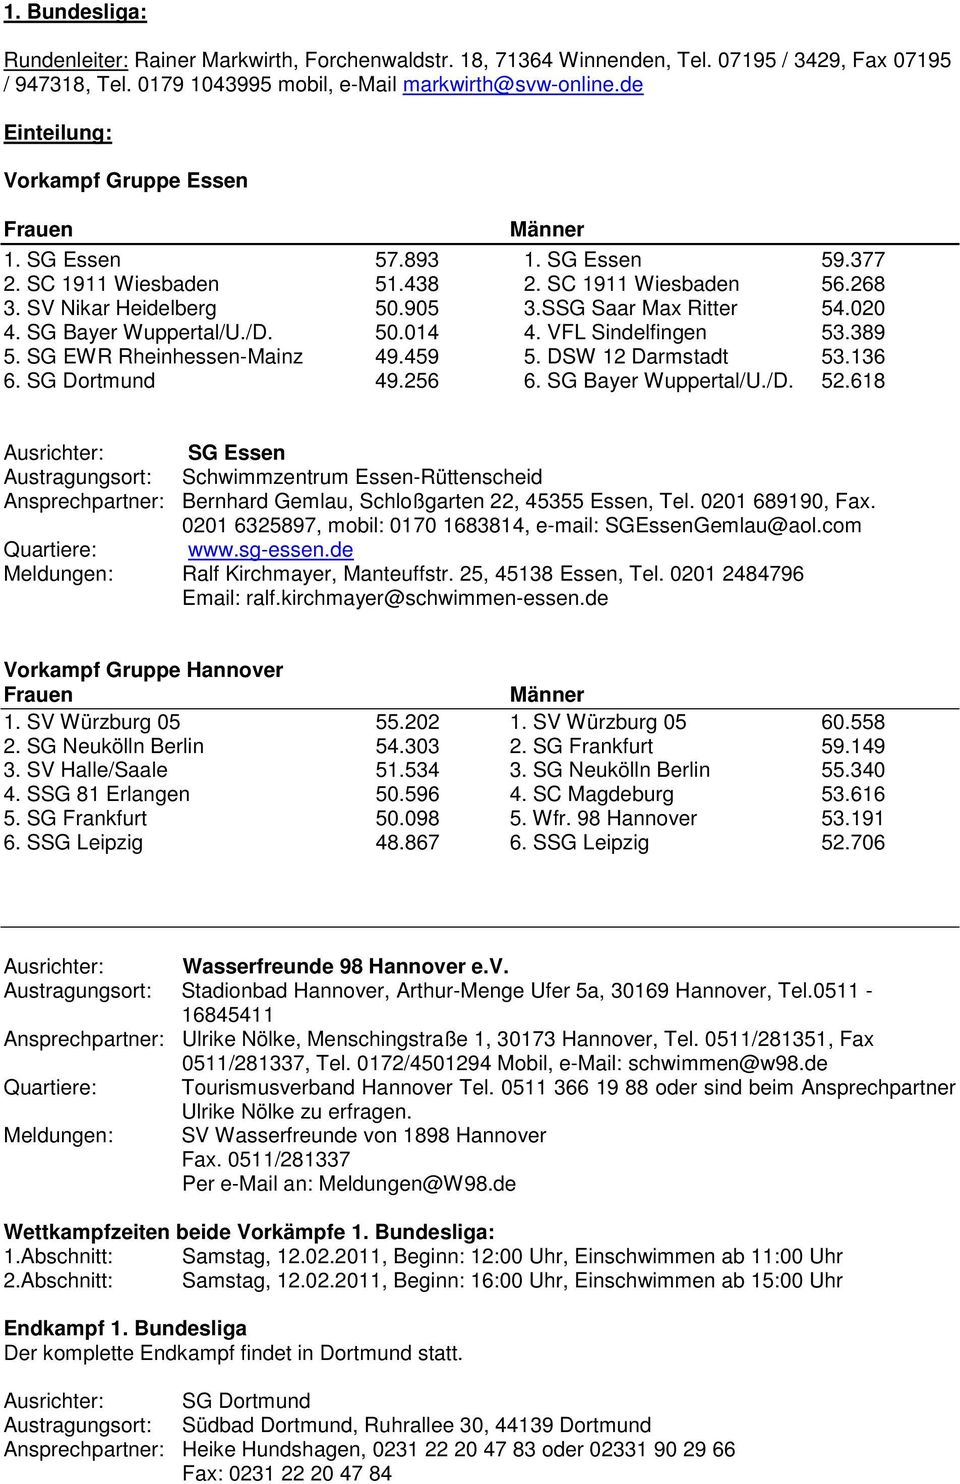 SG Bayer Wuppertal/U./D. 50.014 4. VFL Sindelfingen 53.389 5. SG EWR Rheinhessen-Mainz 49.459 5. DSW 12 Darmstadt 53.136 6. SG Dortmund 49.256 6. SG Bayer Wuppertal/U./D. 52.